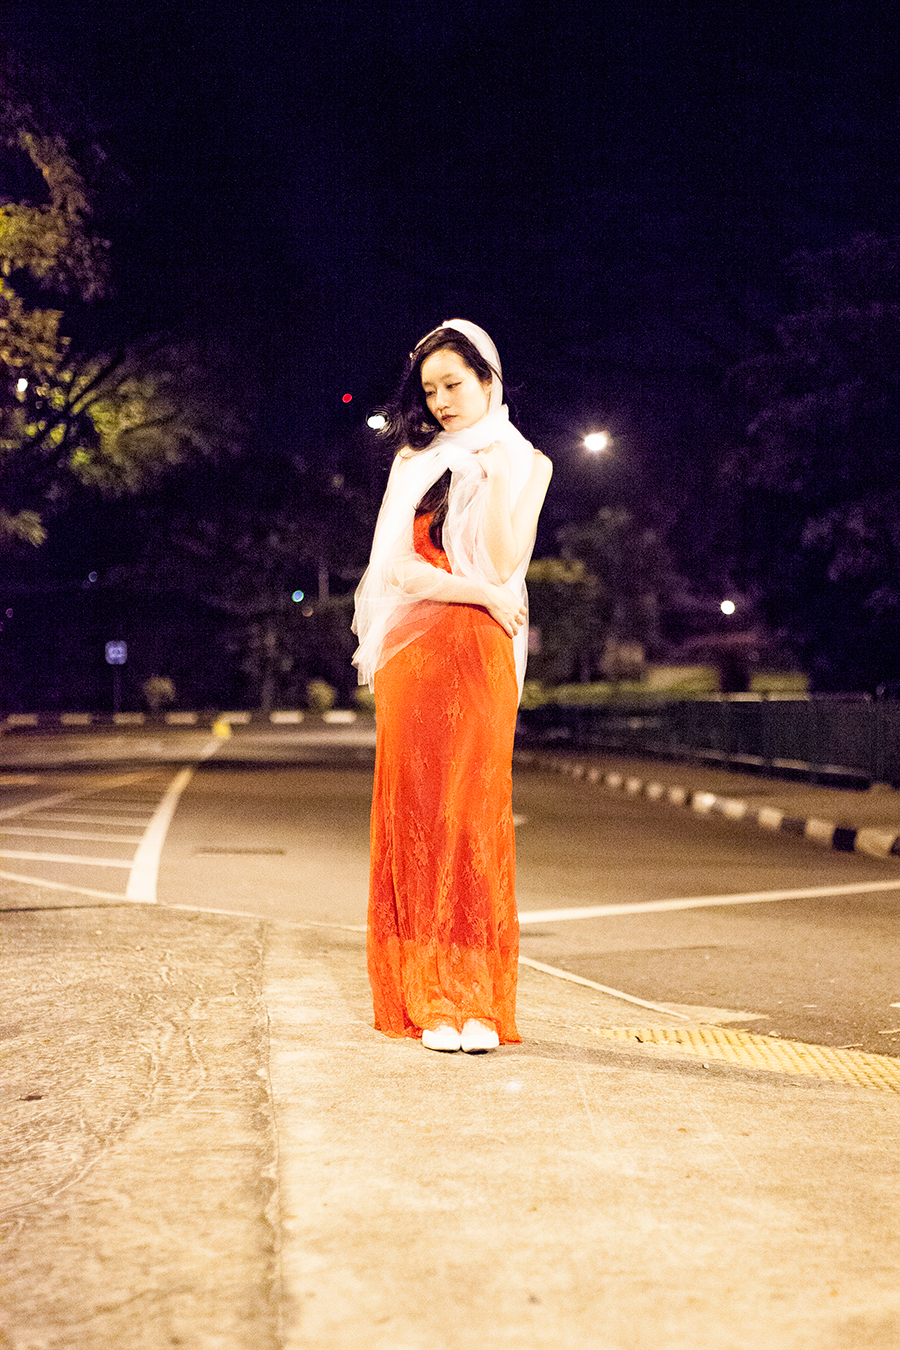 Banggood red lace gown and Banggood white long wedding veil.